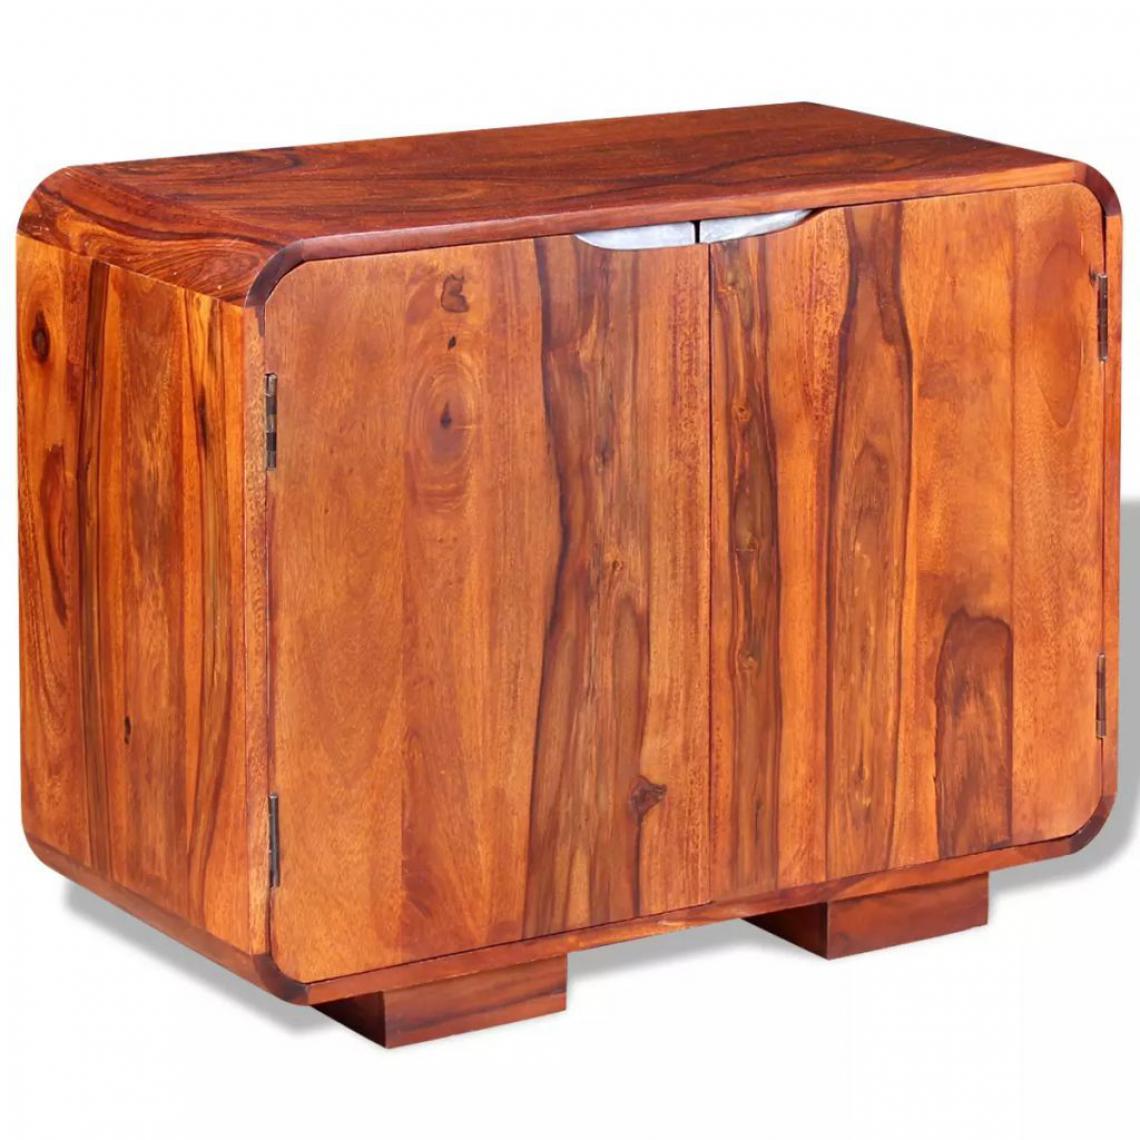 Helloshop26 - Buffet bahut armoire console meuble de rangement bois massif de sesham 75 cm 4402016 - Consoles